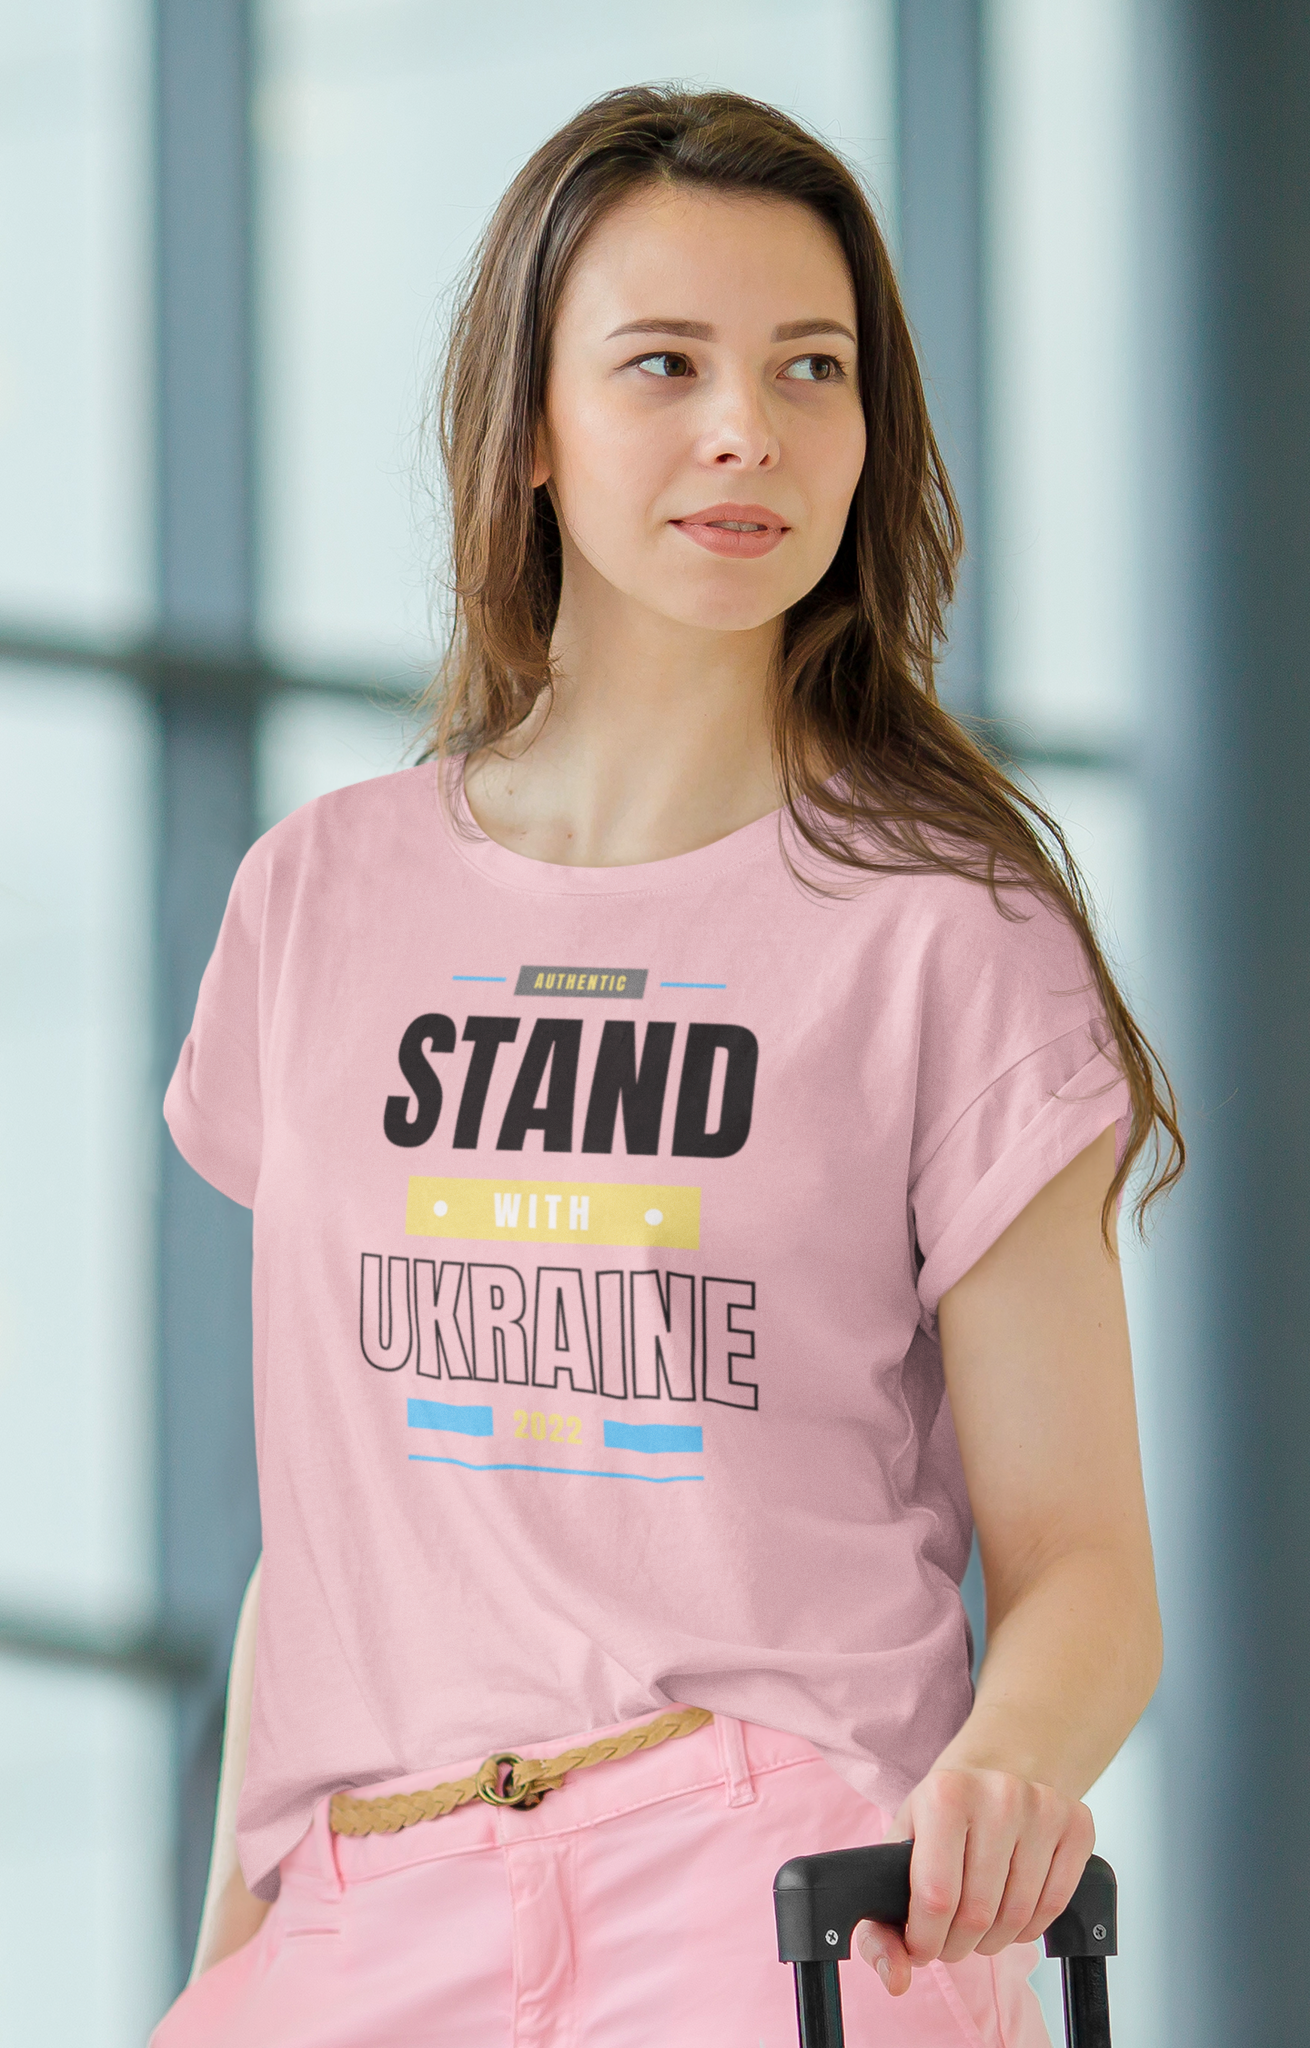 Ryssland skall sluta anfalla Ukraina. Tshirt med support för Ukraine och dess folk. Stand With Ukraine